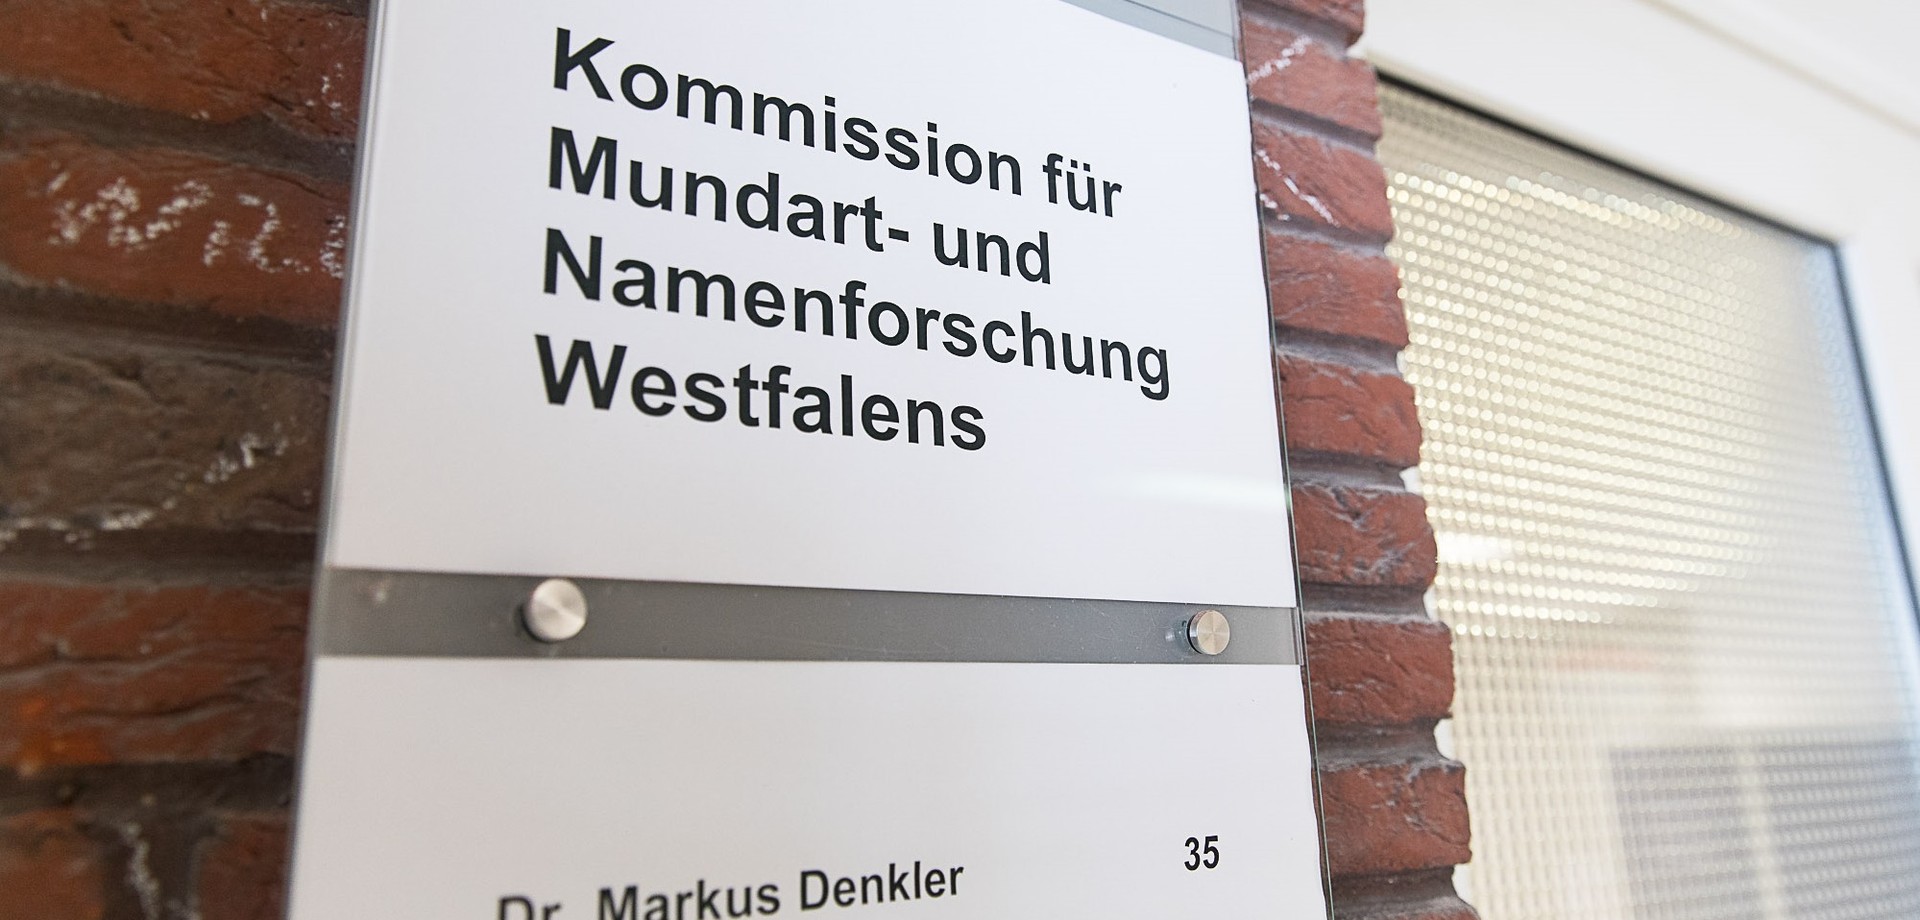 Türschild der Kommission für Mundart- und Namenforschung Westfalens